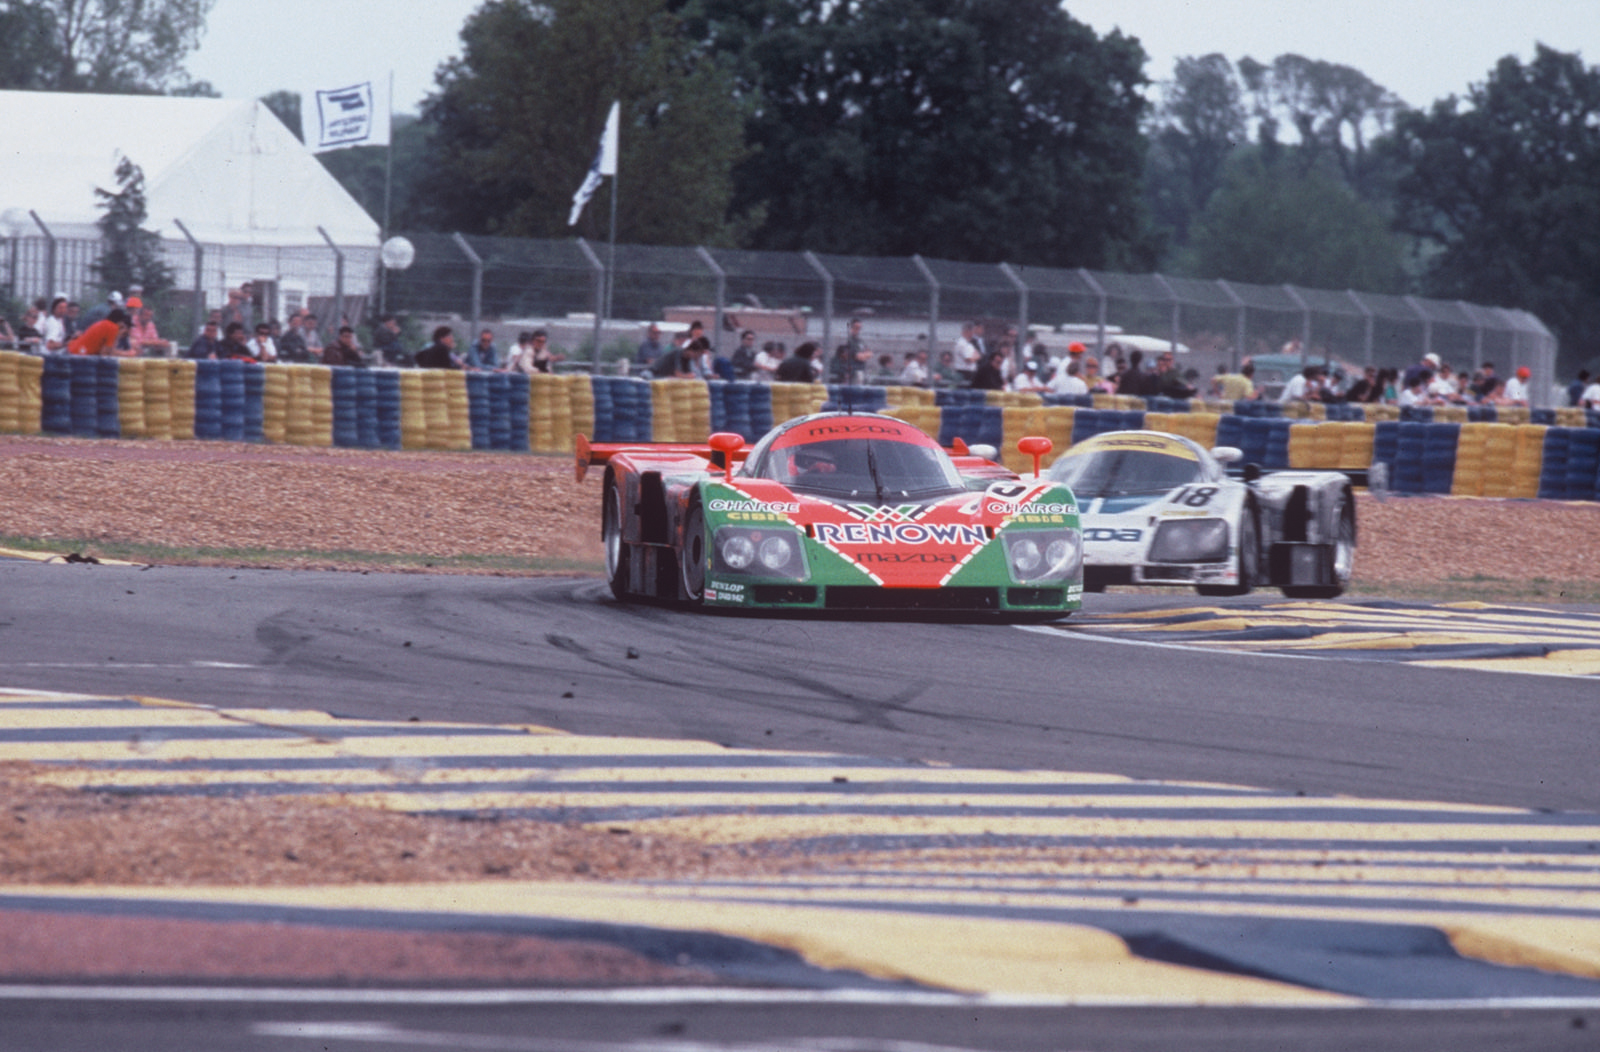 Mazda 787B Le Mans 1991